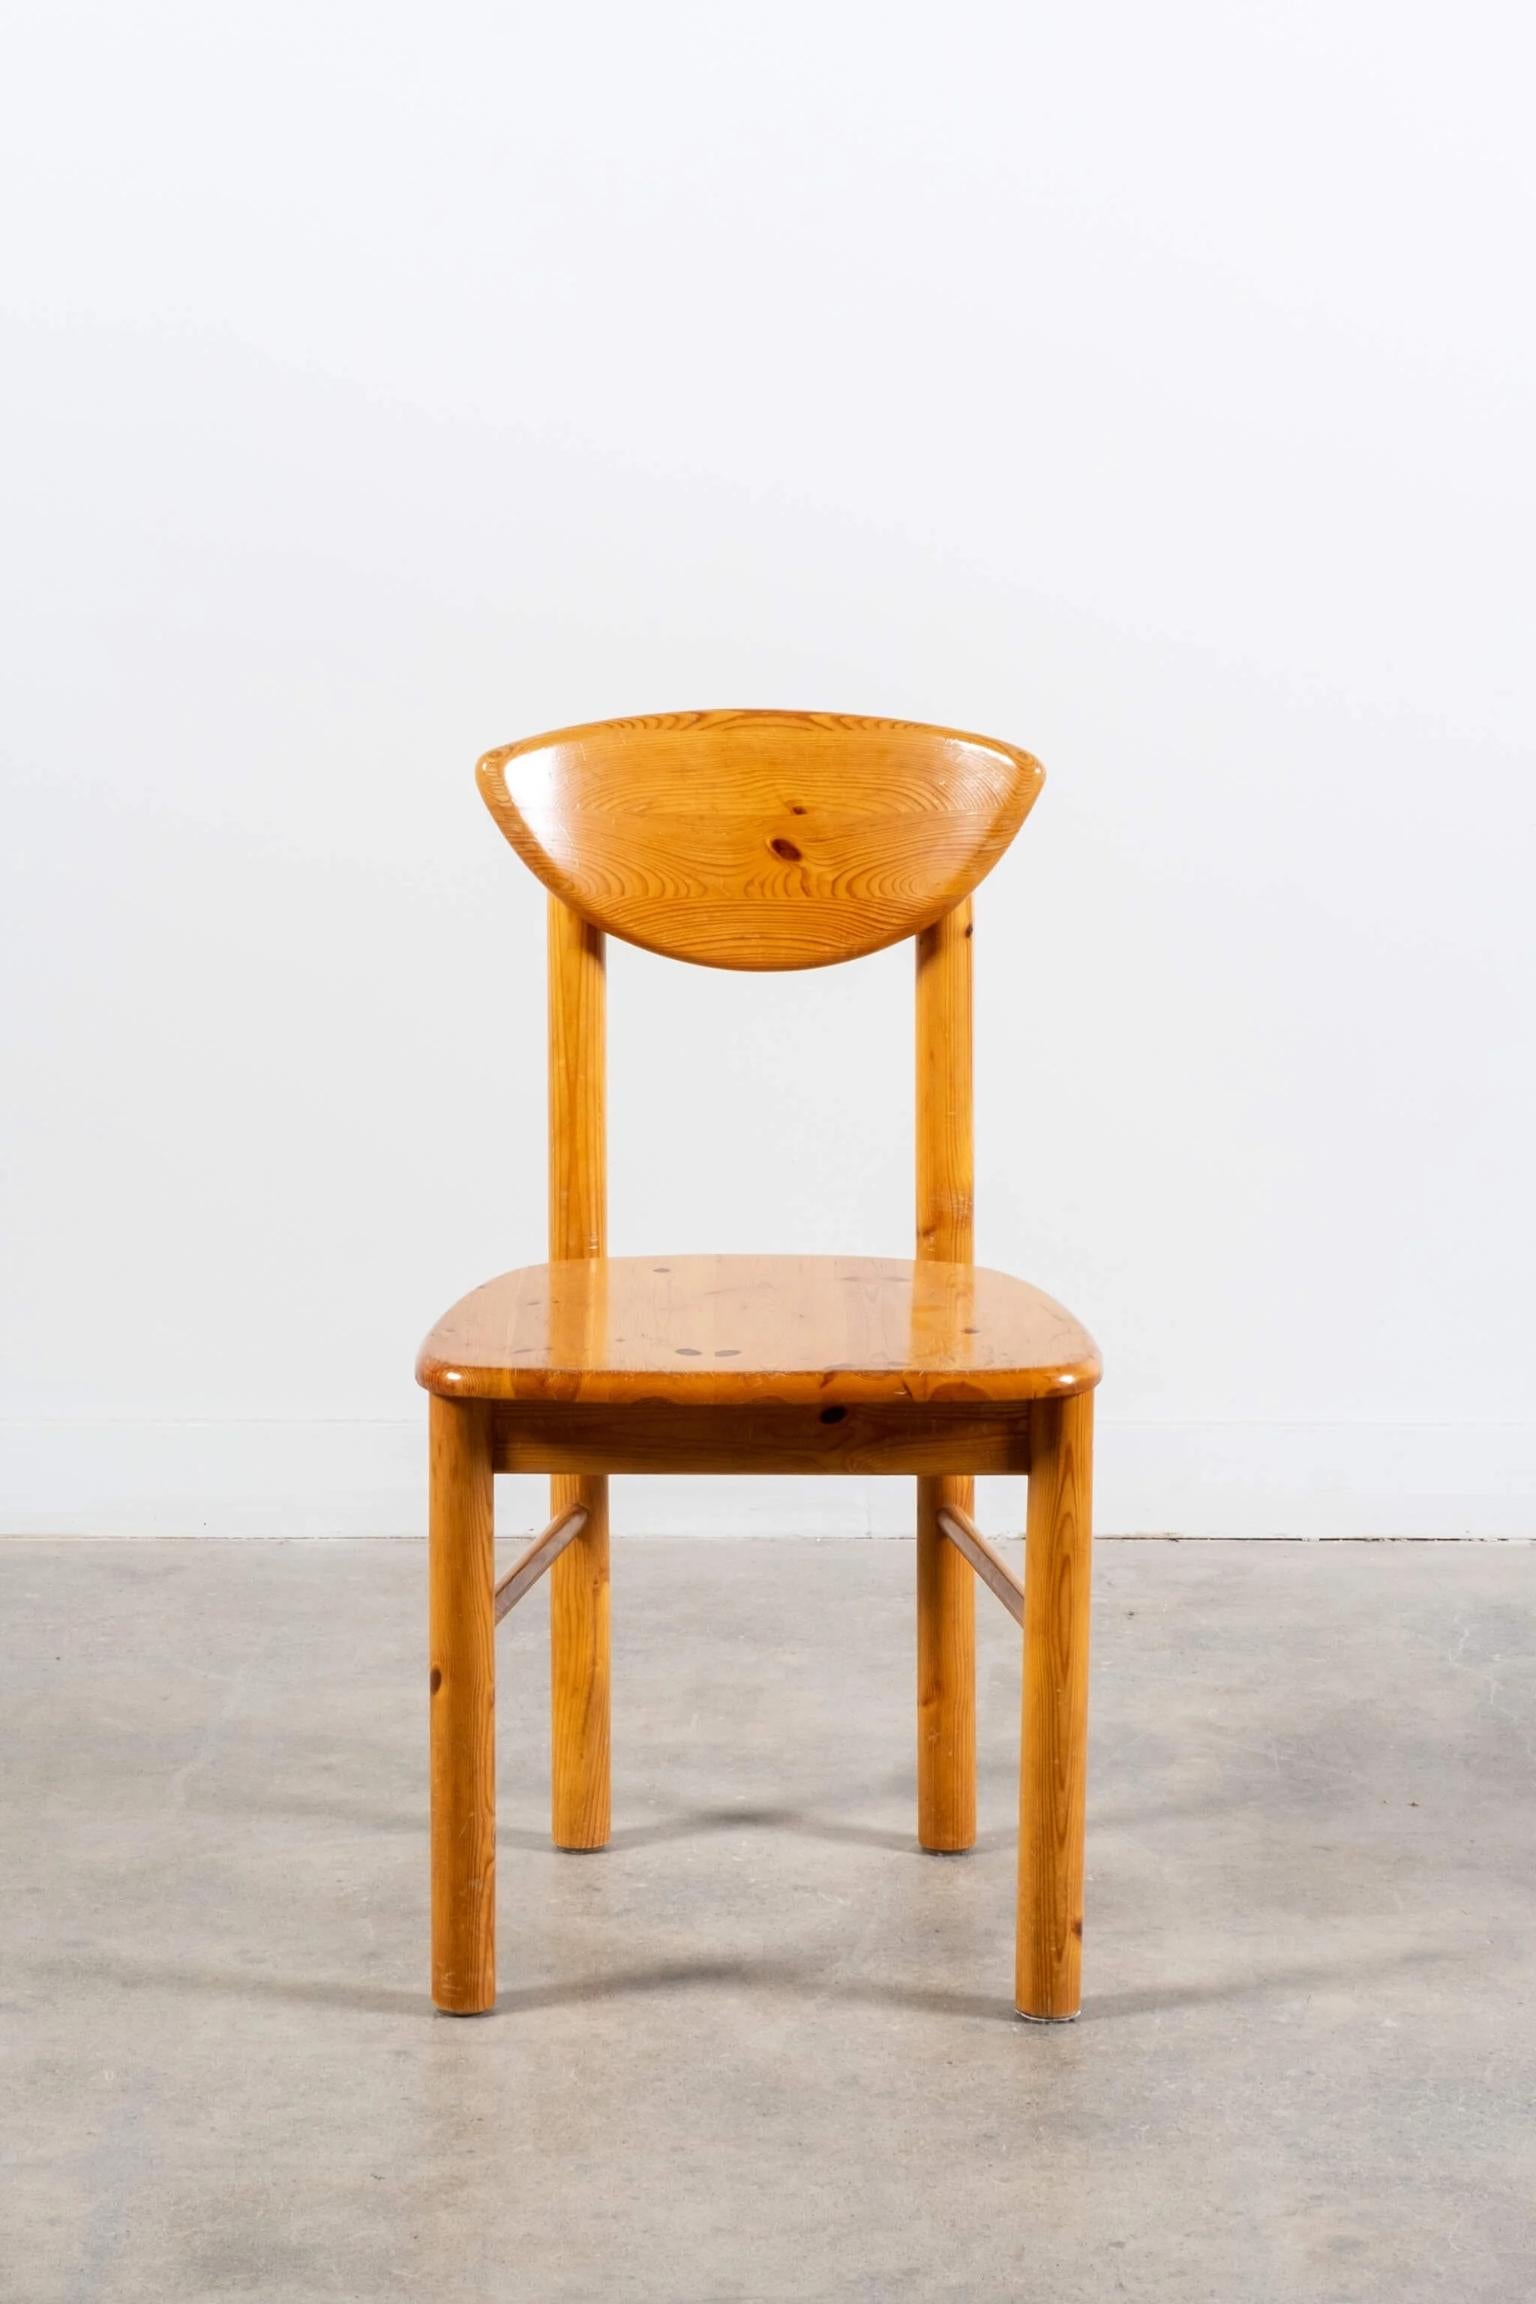 En tête de liste des designers, présentées dans un récent numéro d'Architectural Digest, les chaises en bois de pin danois offrent cette merveilleuse combinaison de sculptural et d'organique.
Solides dans leur construction, simples dans leur forme